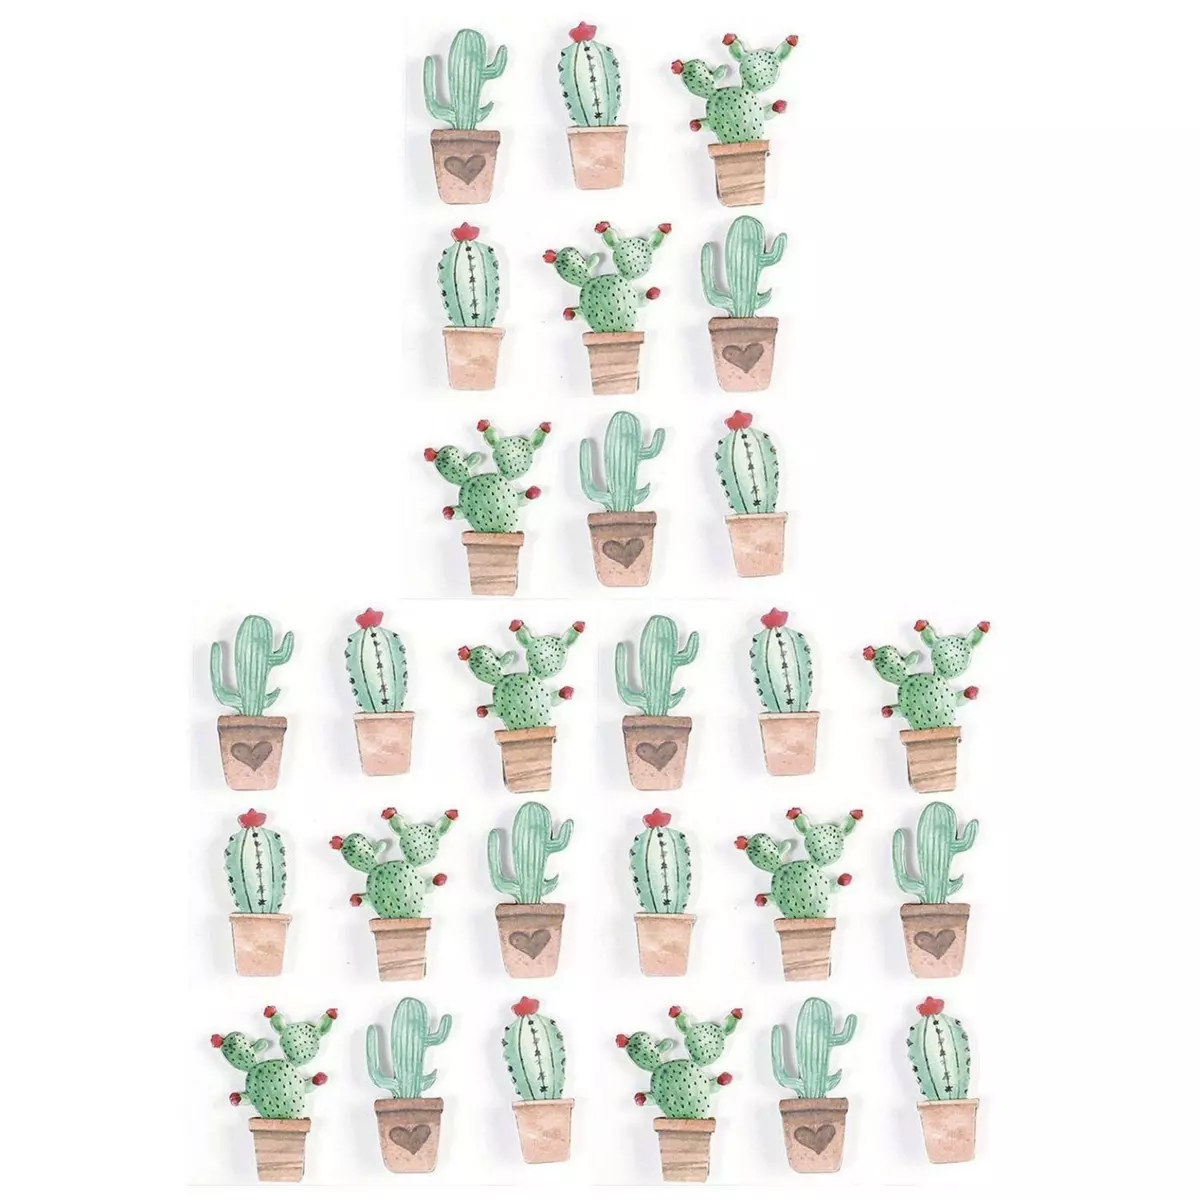 Graine créative 27 stickers 3D cactus mexicains 4,5 cm